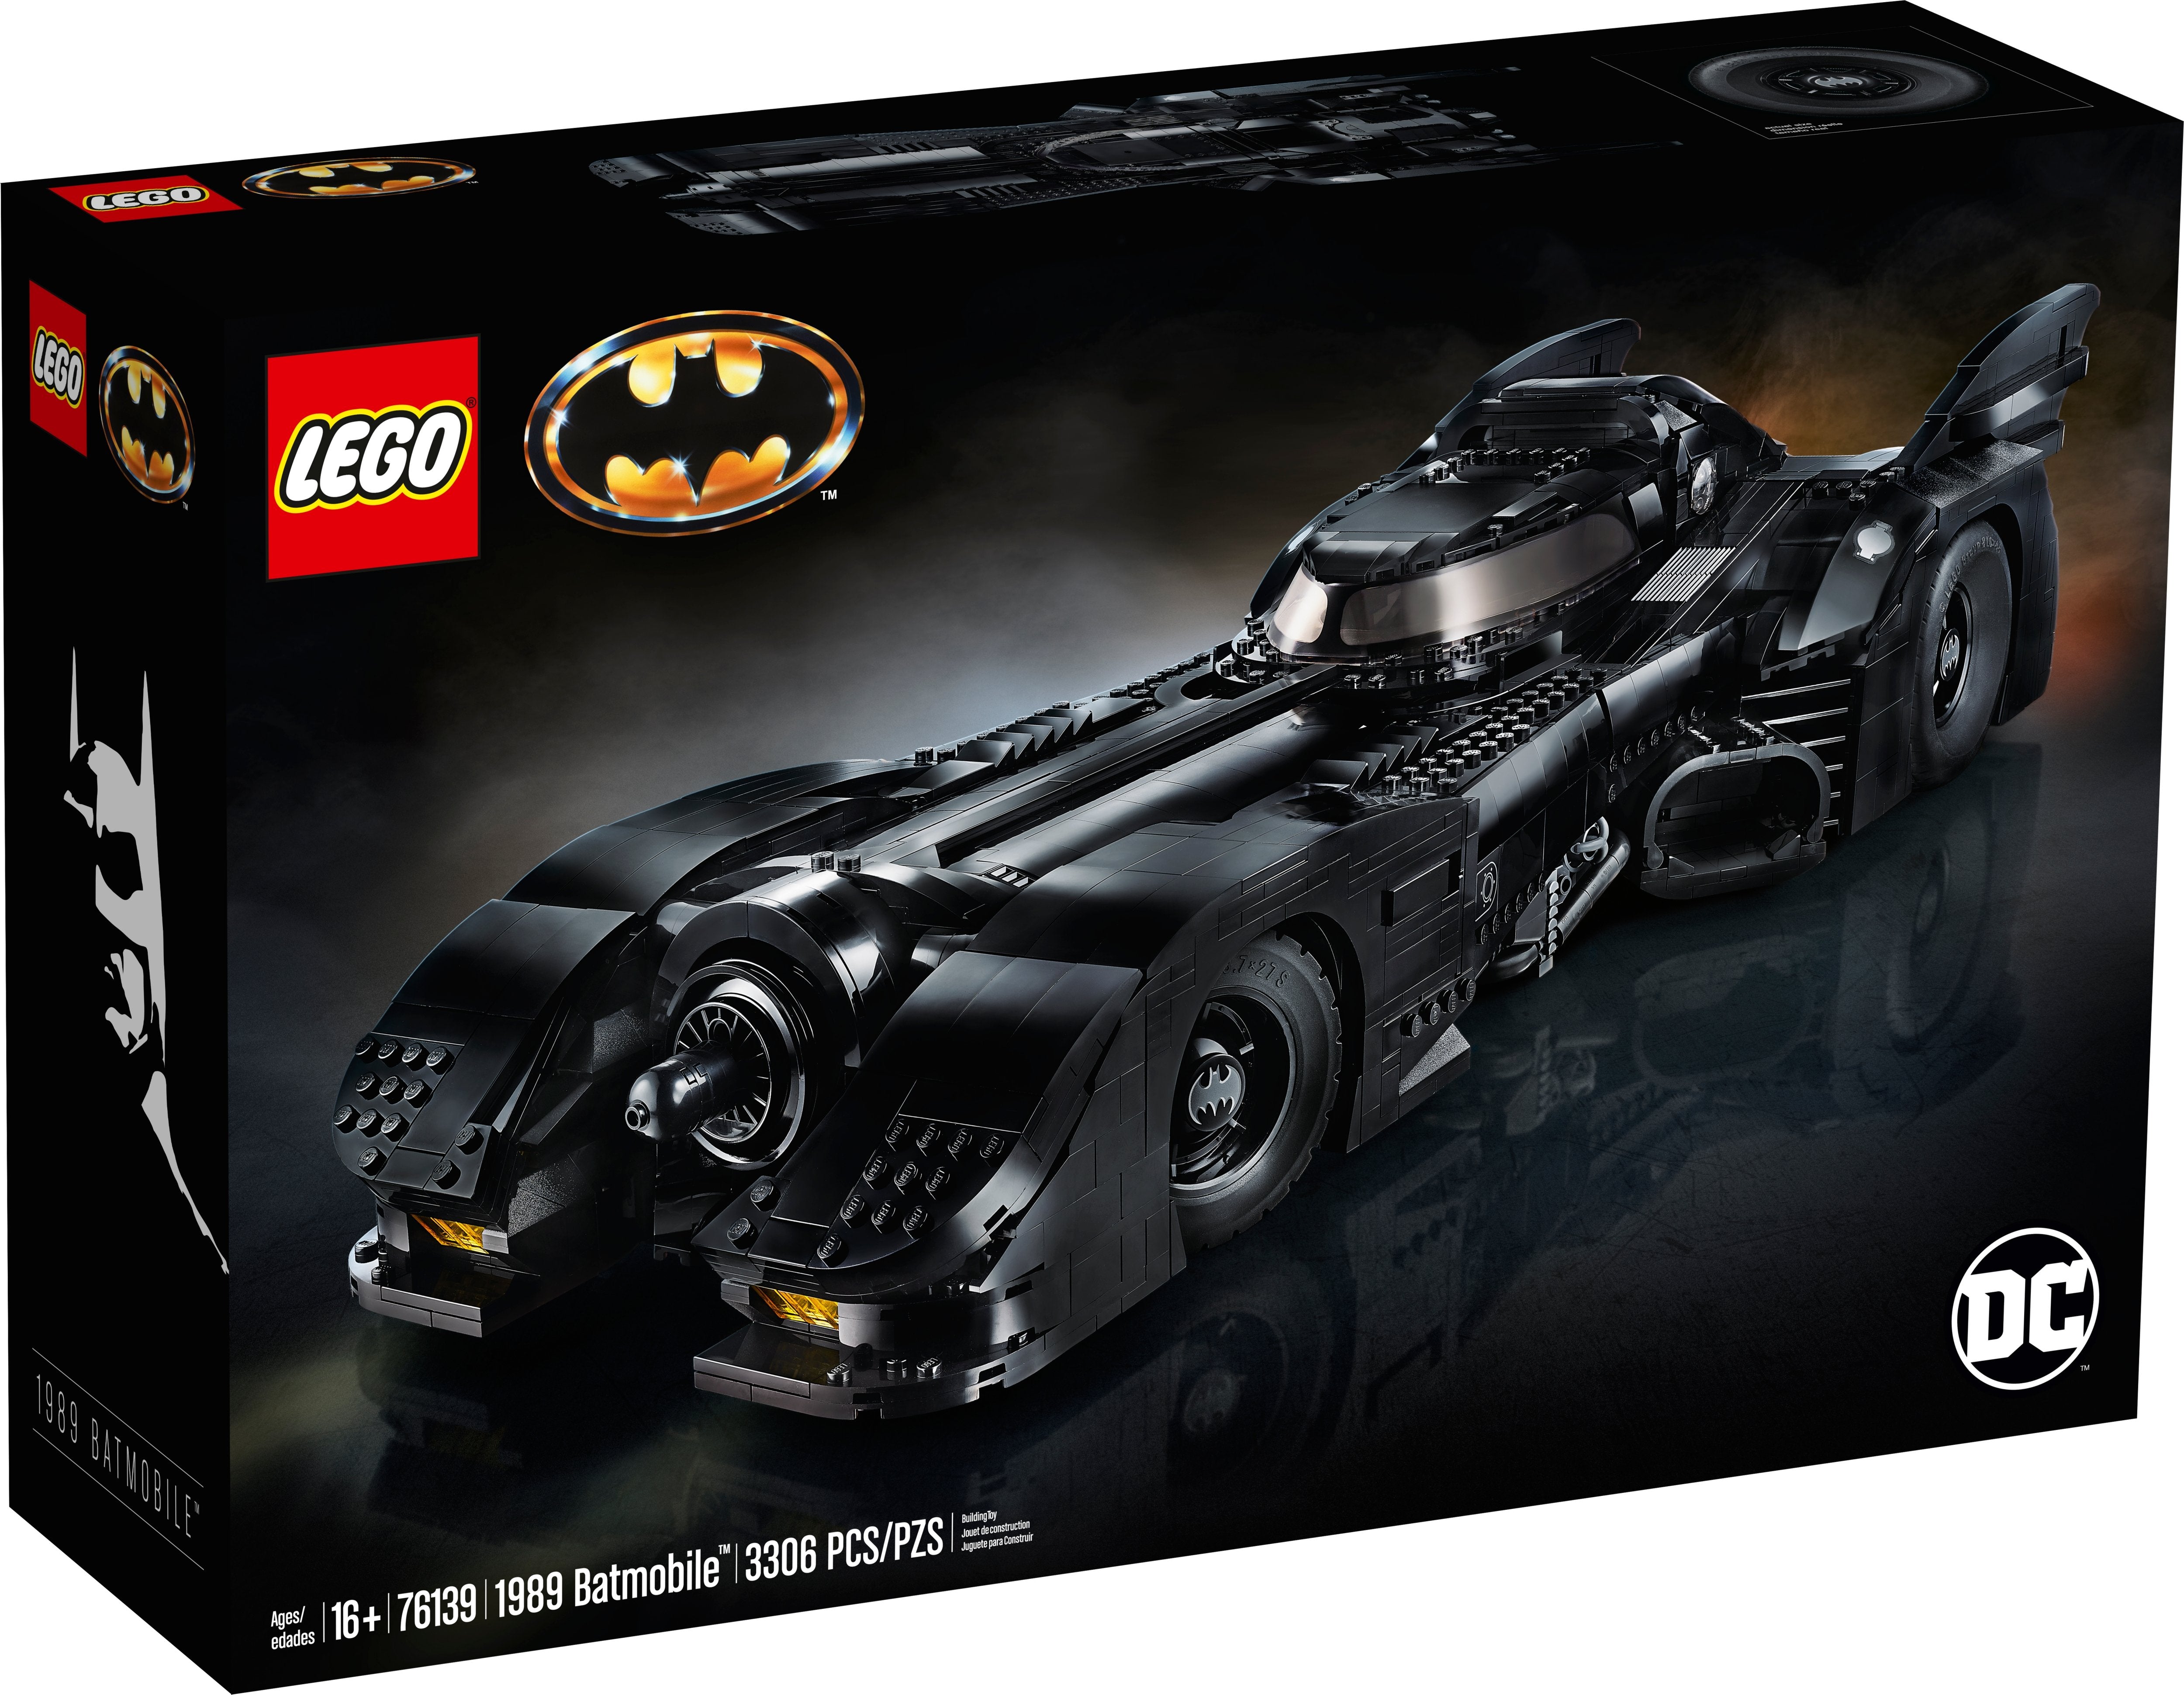 LEGO Batman 1989 Batmobile (76139) - im GOLDSTIEN.SHOP verfügbar mit Gratisversand ab Schweizer Lager! (5702016469110)